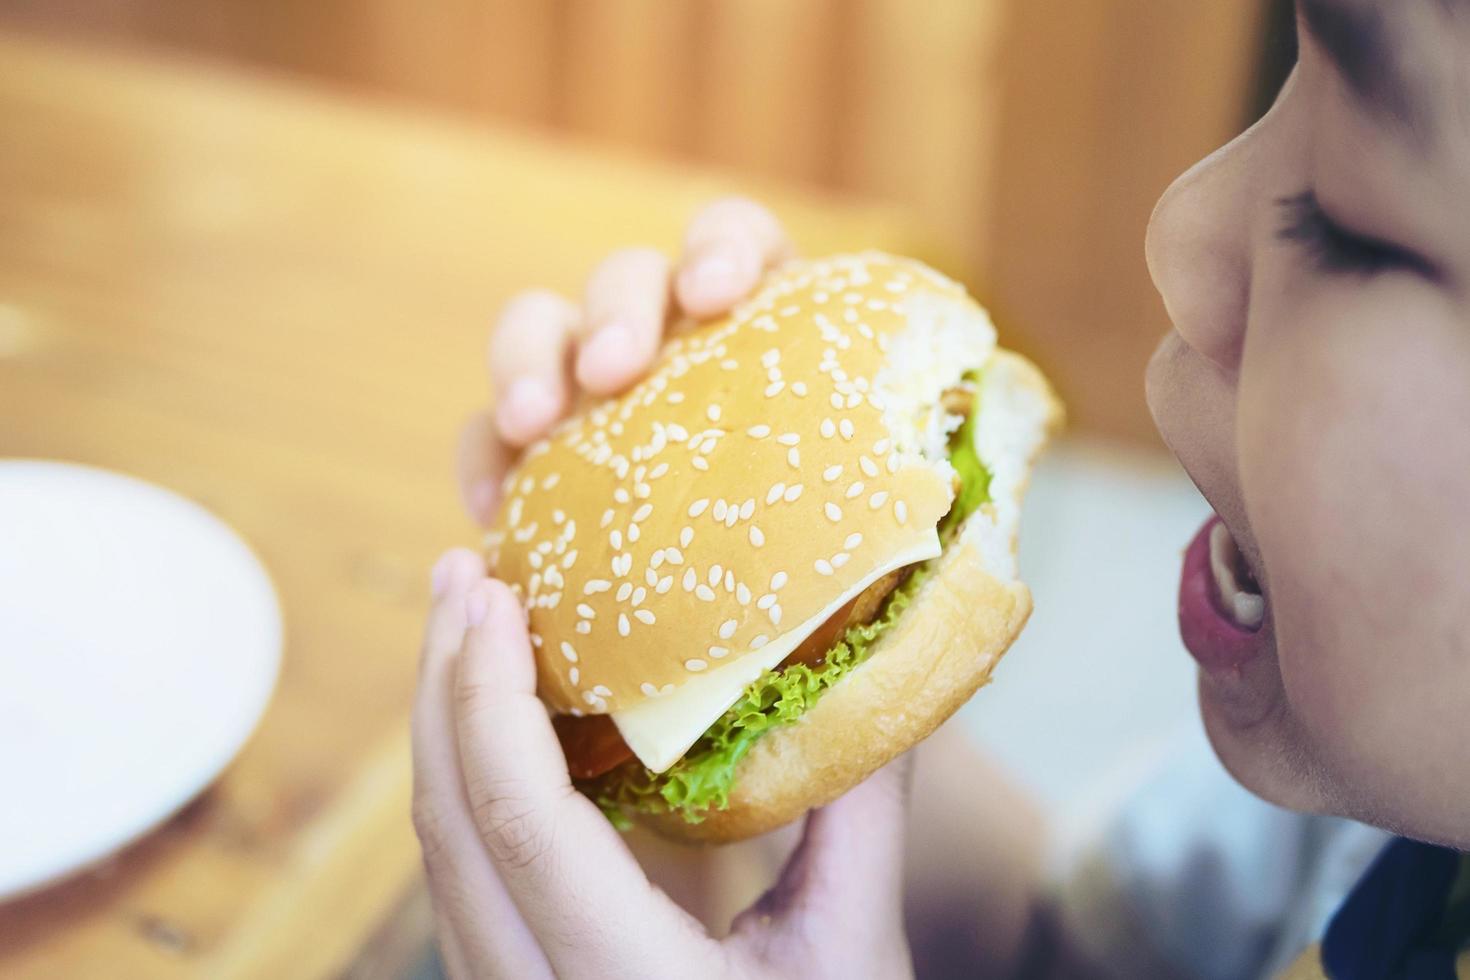 pojke äter hamburgerfrukost med oskärpa träbordsbakgrund - utsökt snabbmatsfrukostkoncept foto